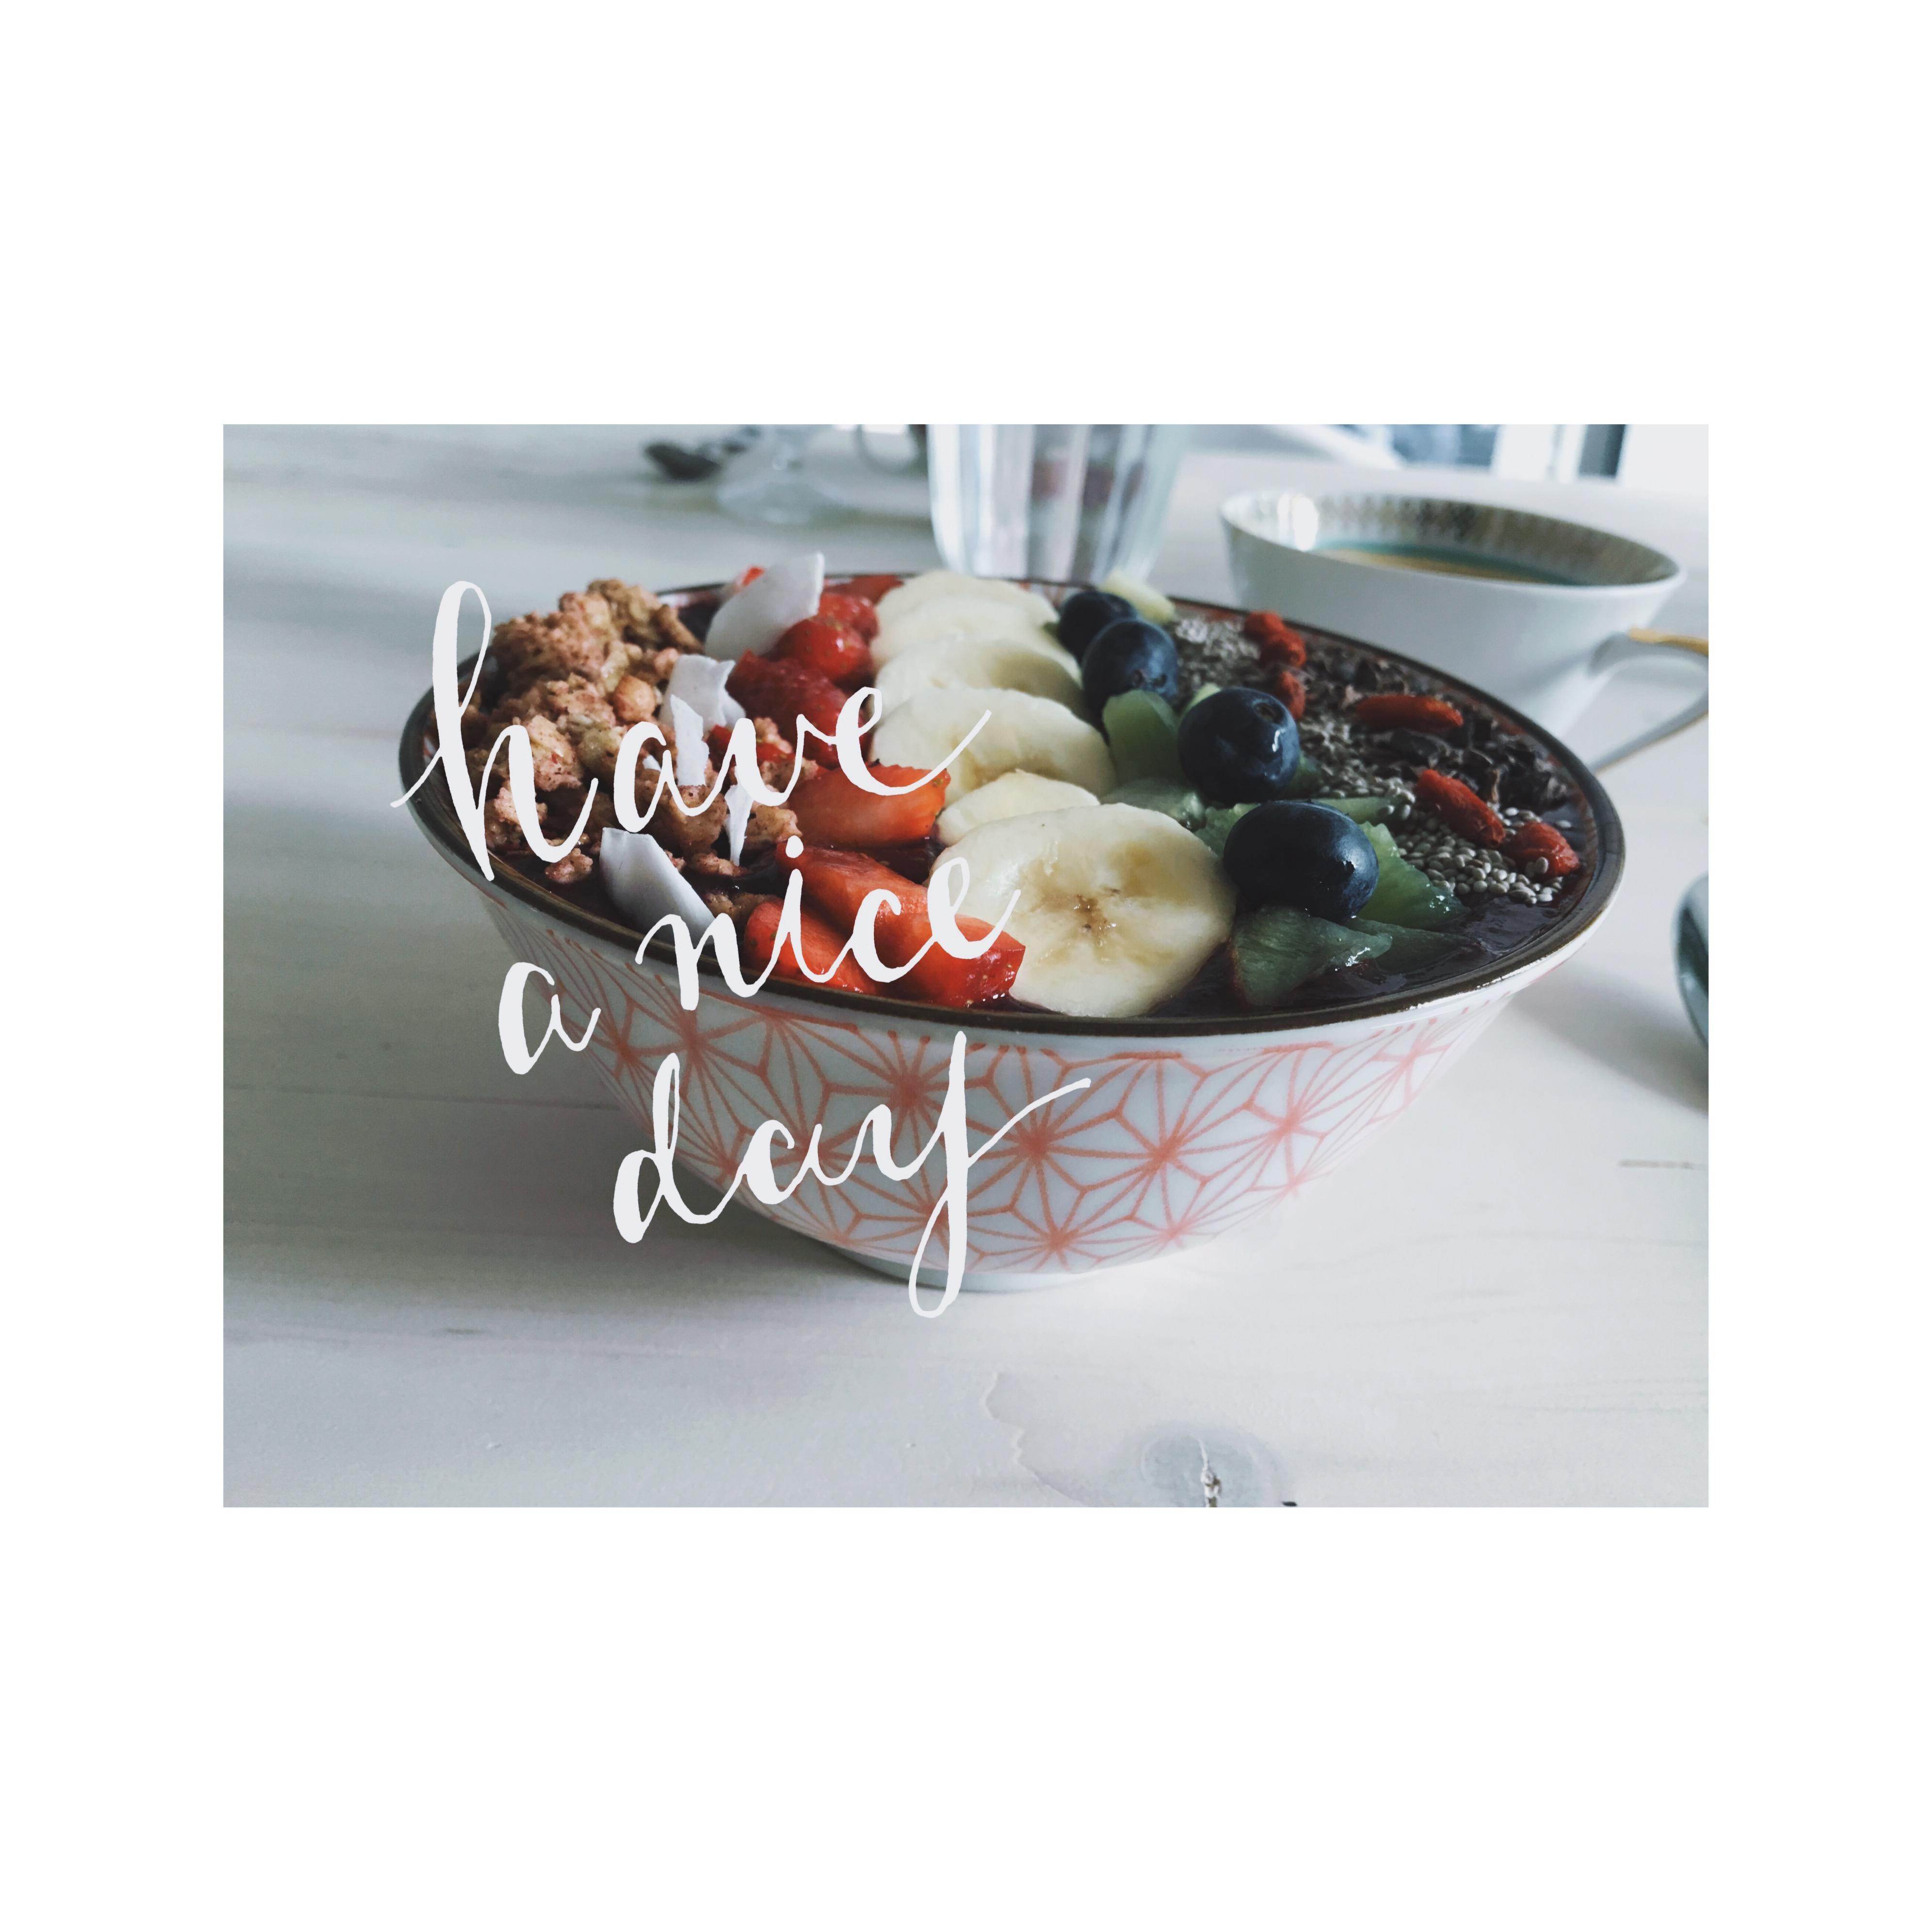 starting the day right #acaibowl #home #vondirinspiriert #food